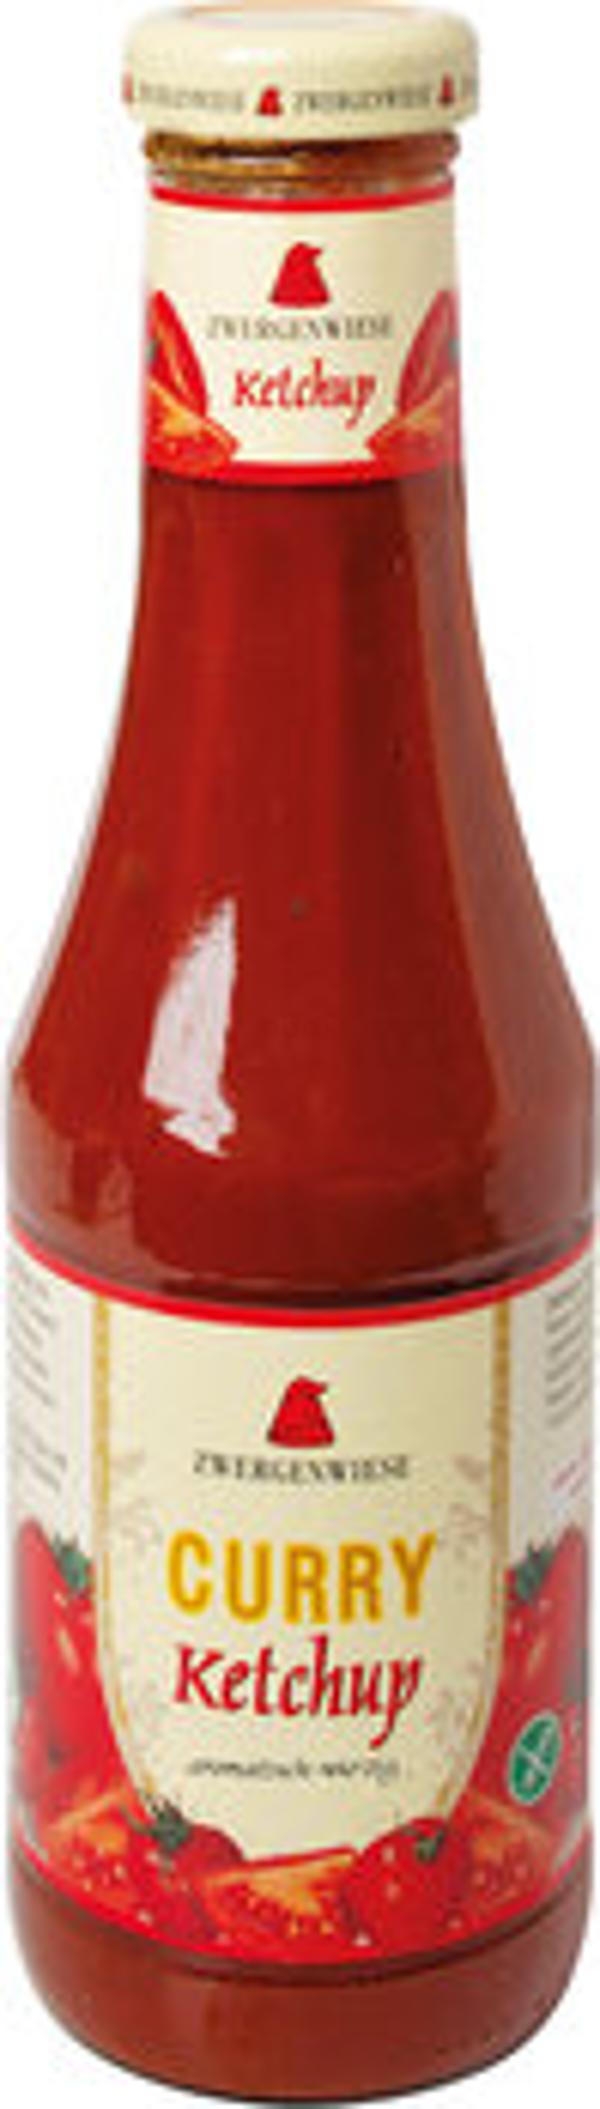 Produktfoto zu Curry Ketchup